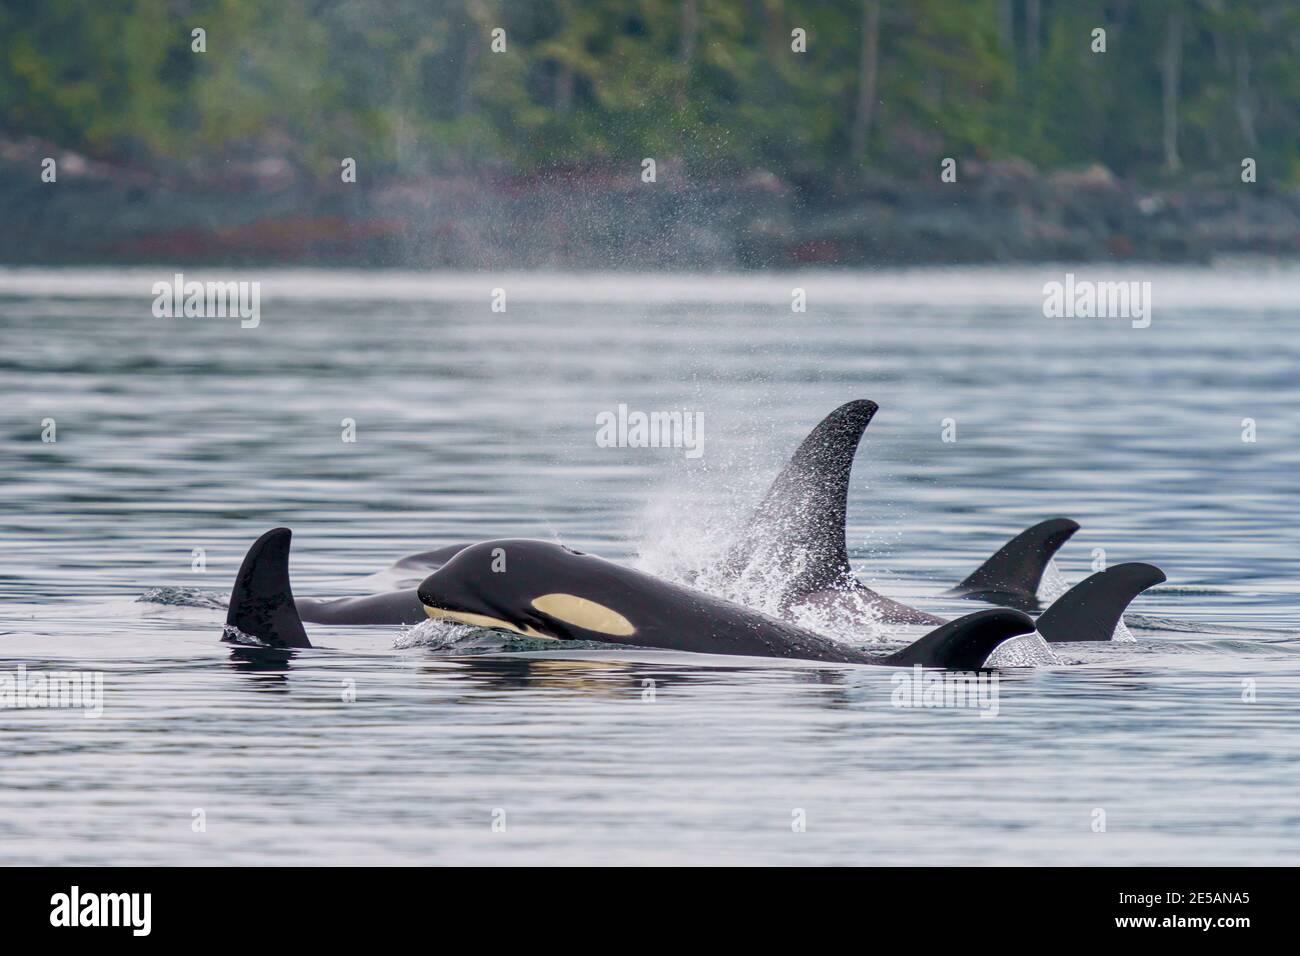 Vaina familiar de orcas residentes del norte a lo largo del Archipiélago de Broughton, Territorio de las primeras Naciones, Columbia Británica, Canadá. Foto de stock